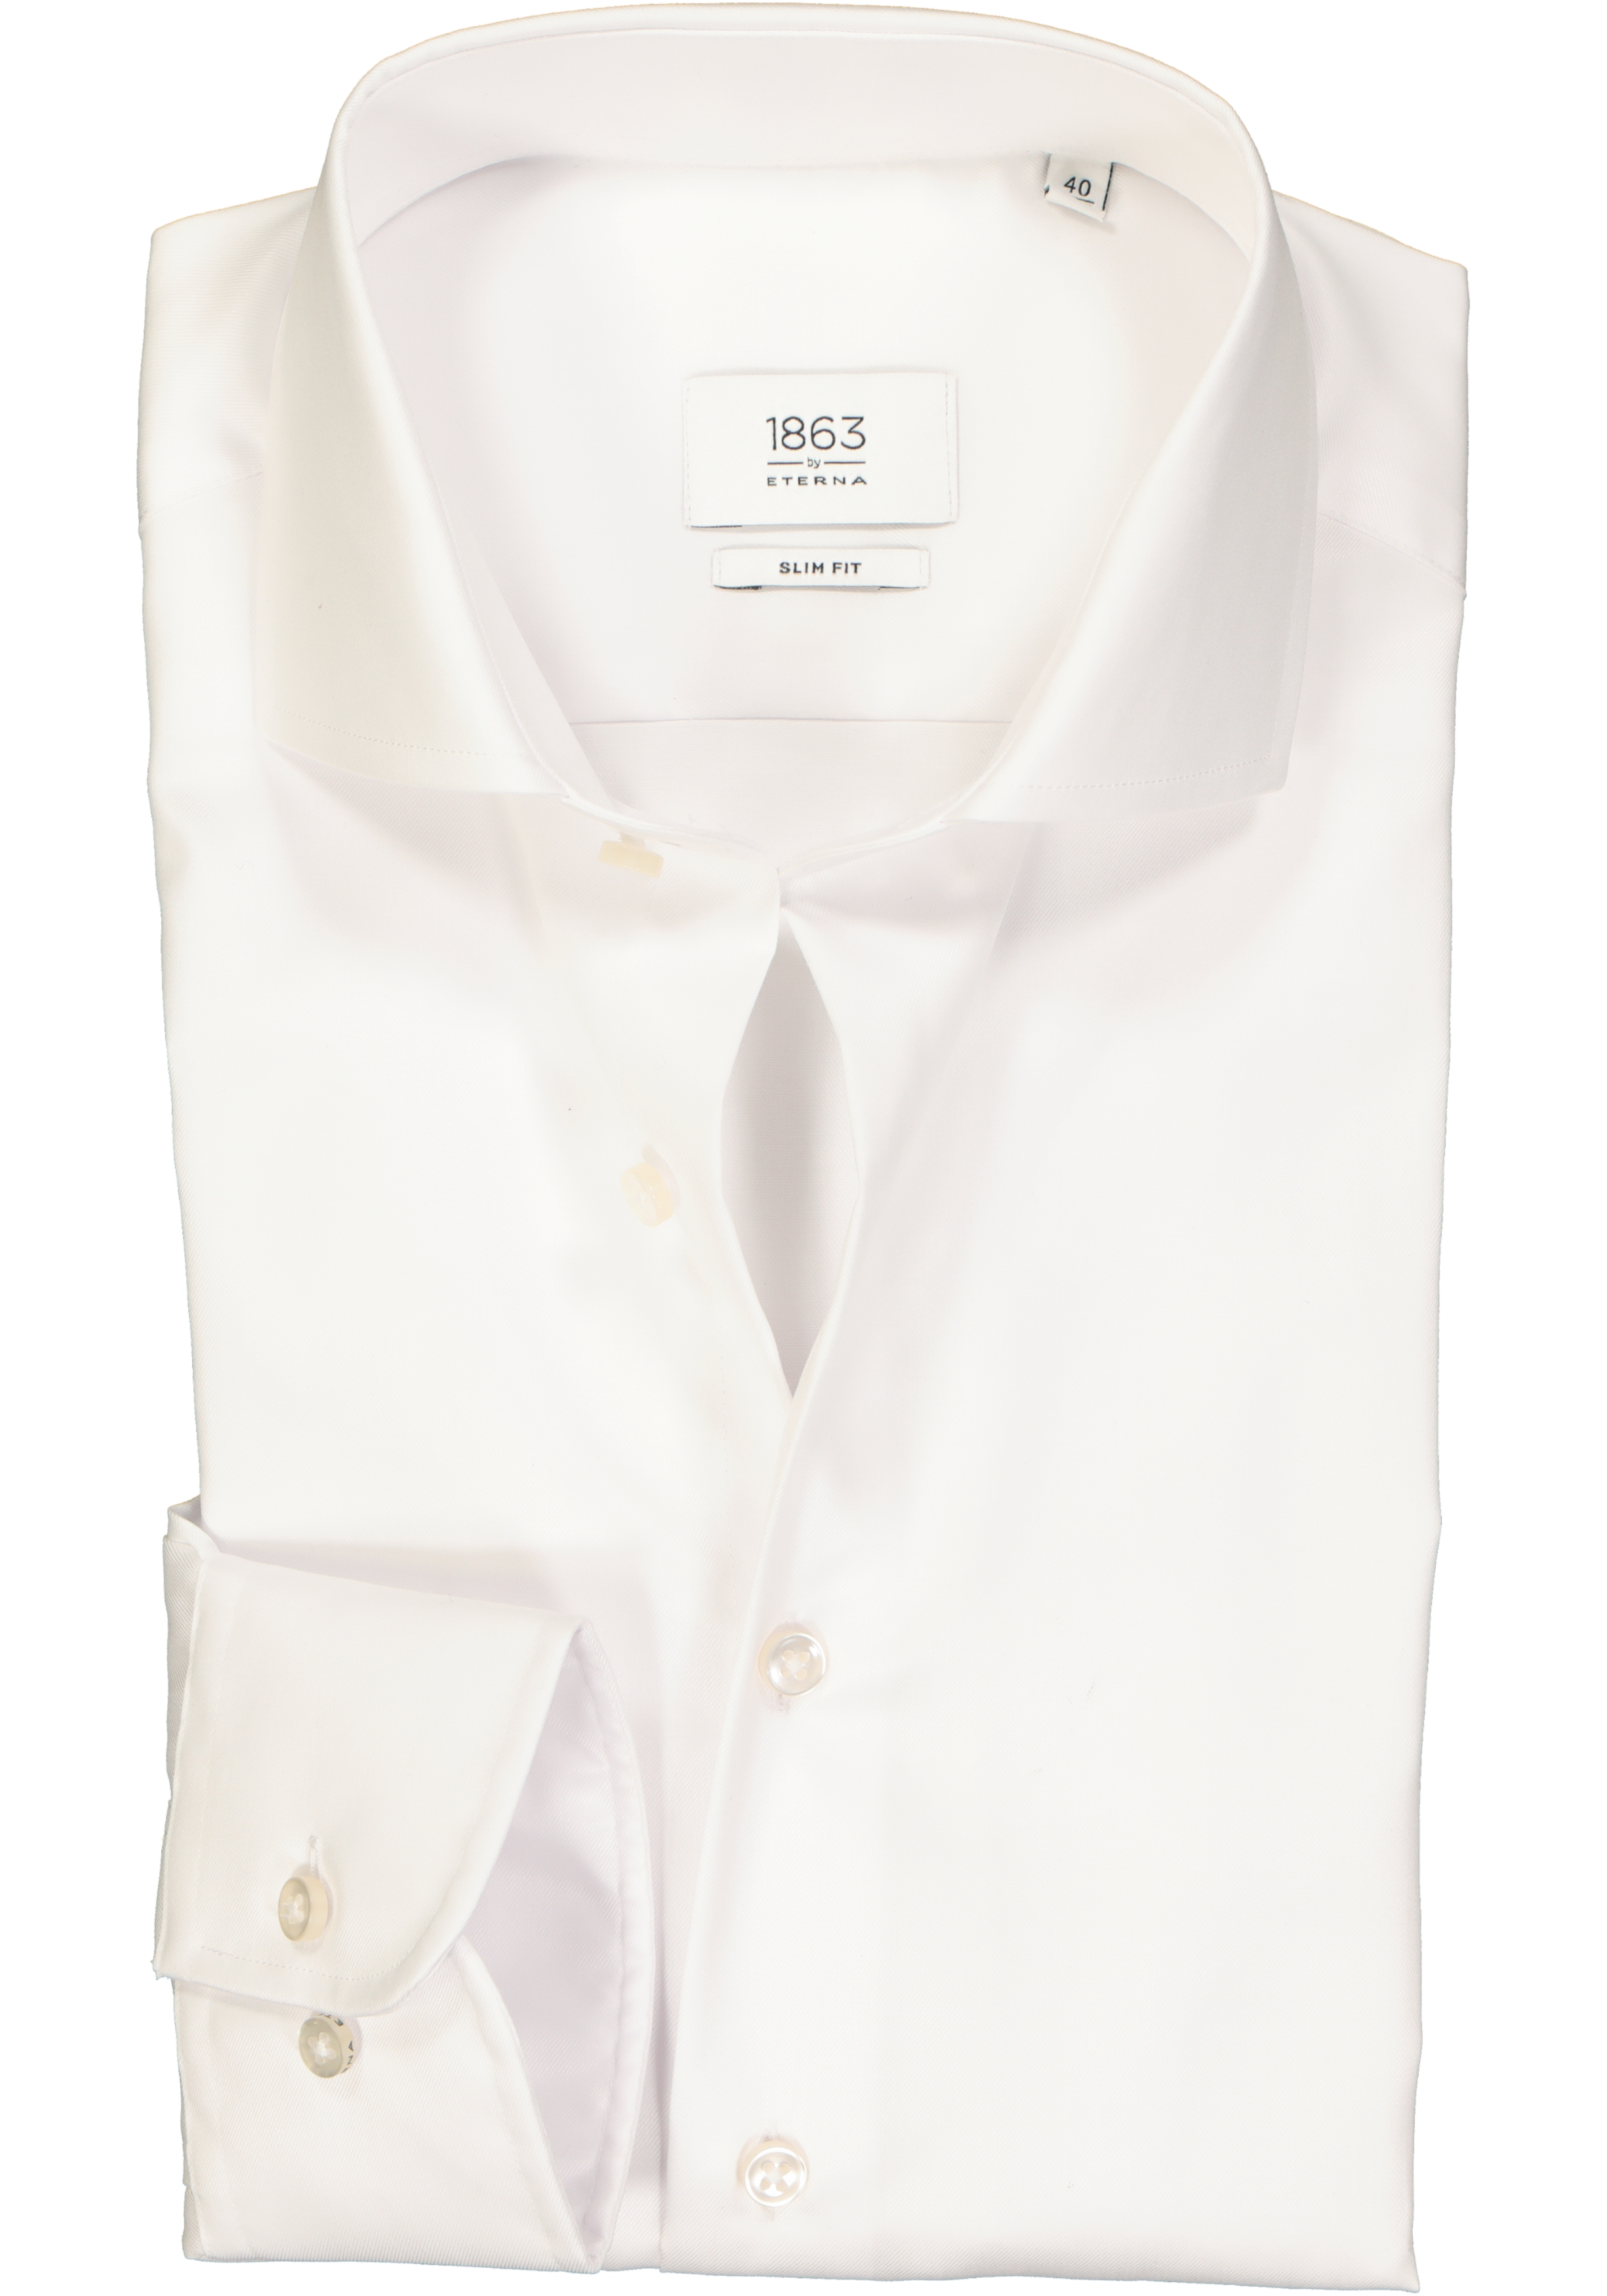 meer zwaartekracht handelaar ETERNA 1863 slim fit premium overhemd, 2-ply twill heren overhemd, wit -  Shop de nieuwste voorjaarsmode